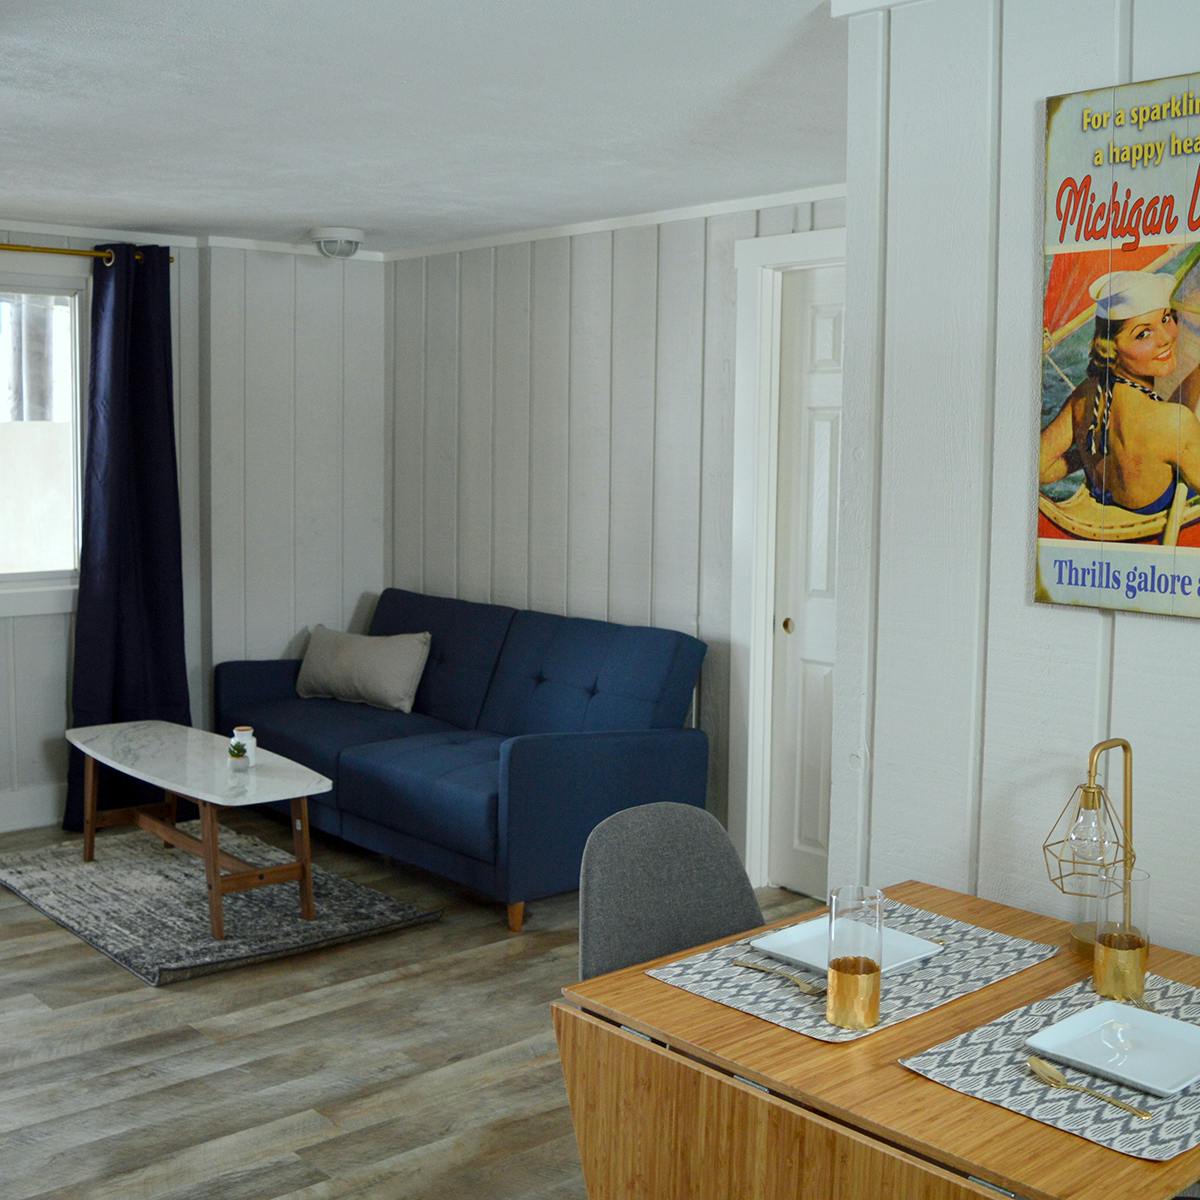 Living area in luxury 2 bedroom suite Beulah Michigan